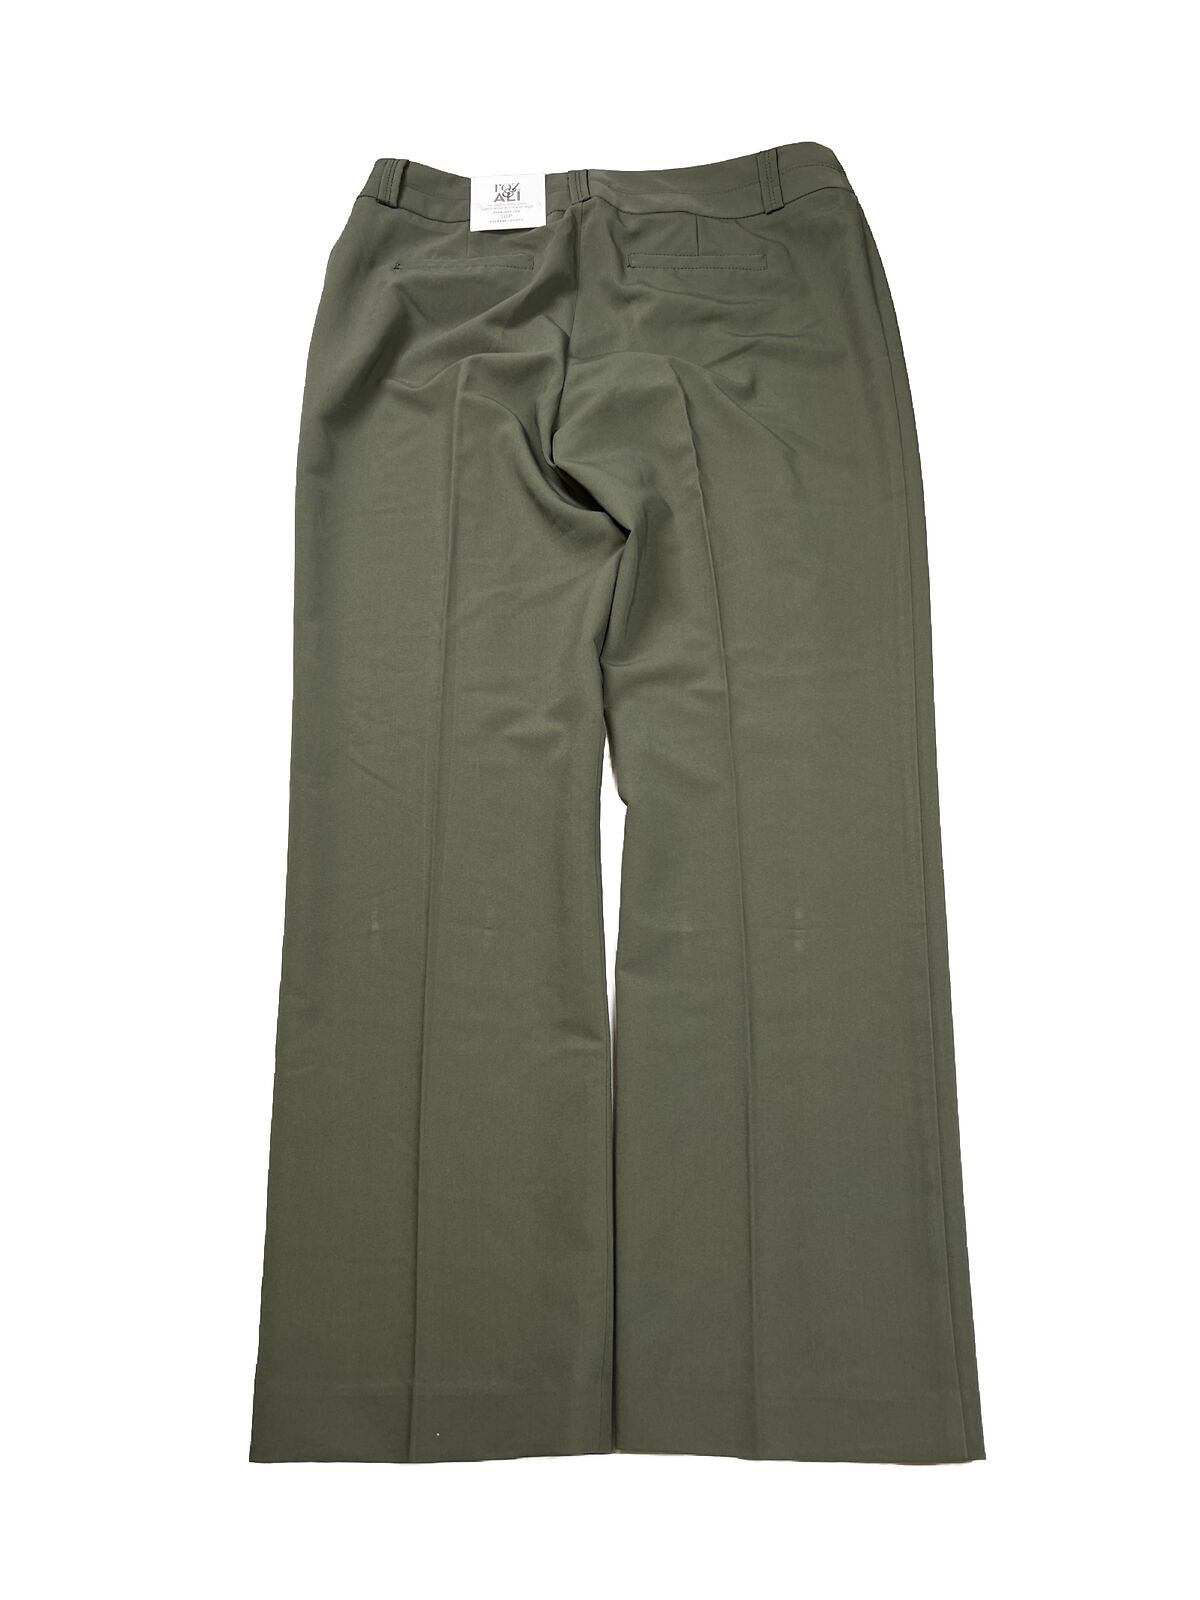 NUEVO Pantalón de vestir verde ajustado de Roz and Ali para mujer - Petite 10P